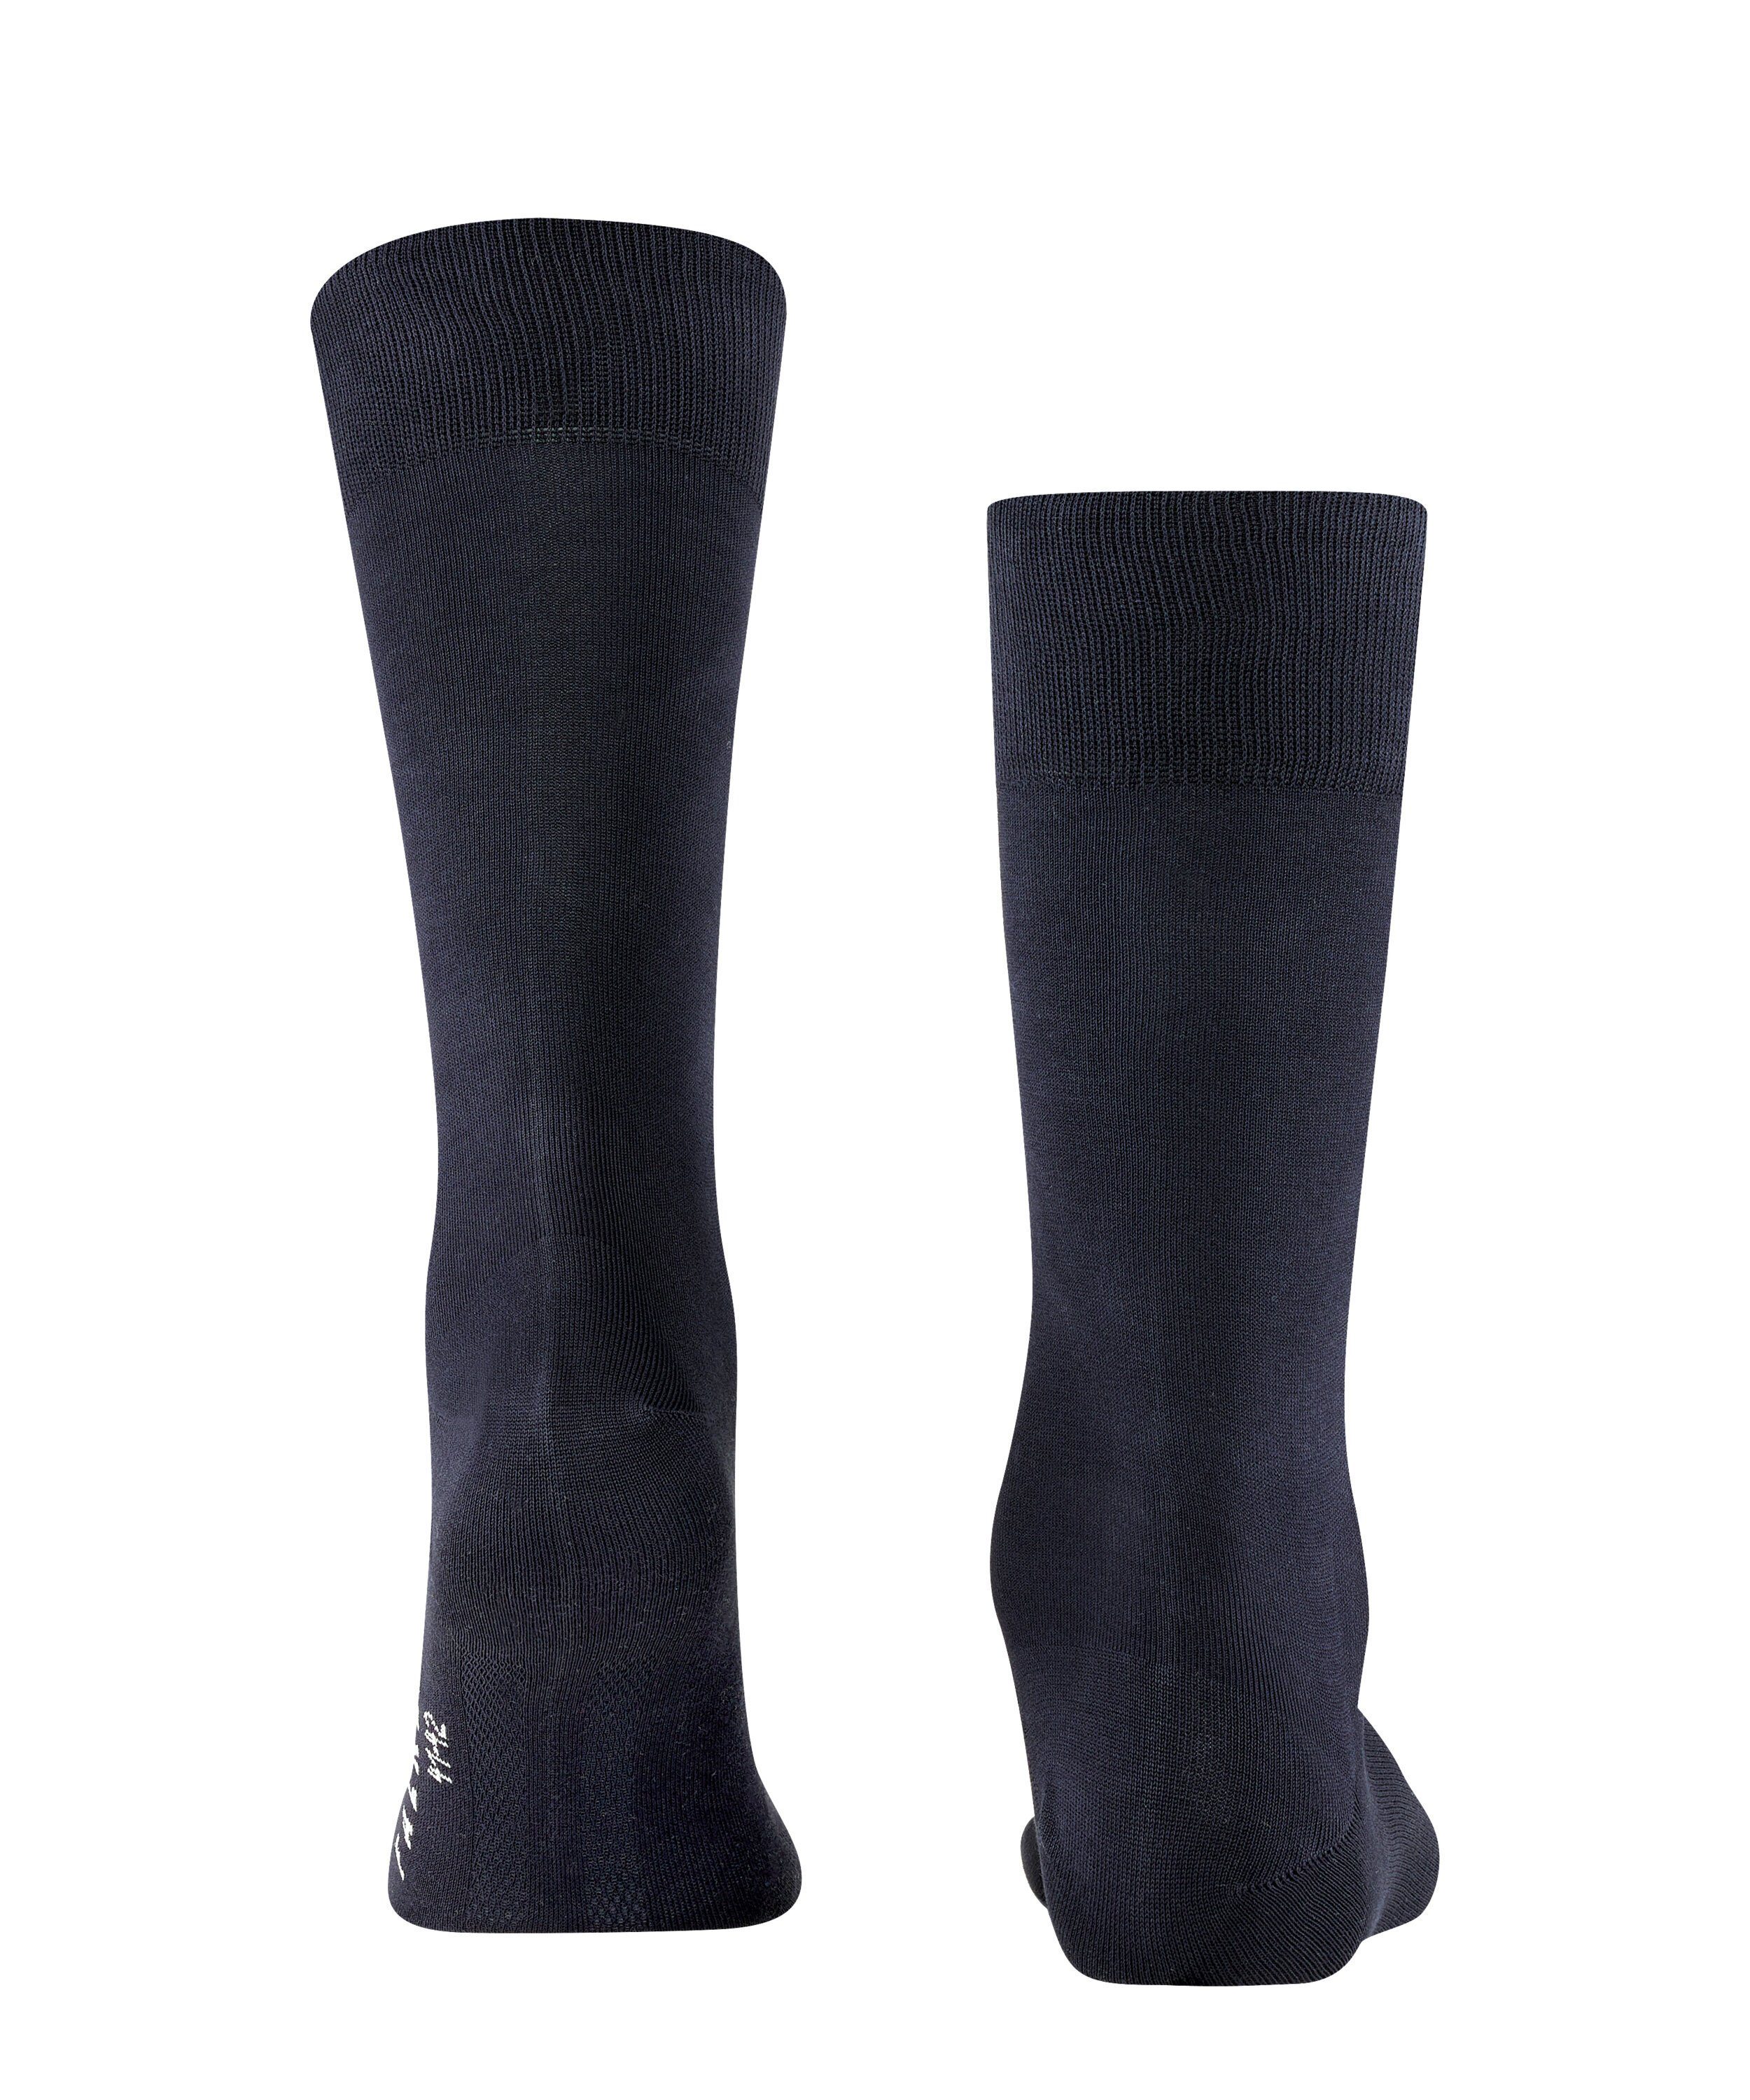 FALKE Socken Cool 24/7 dark (1-Paar) (6370) navy